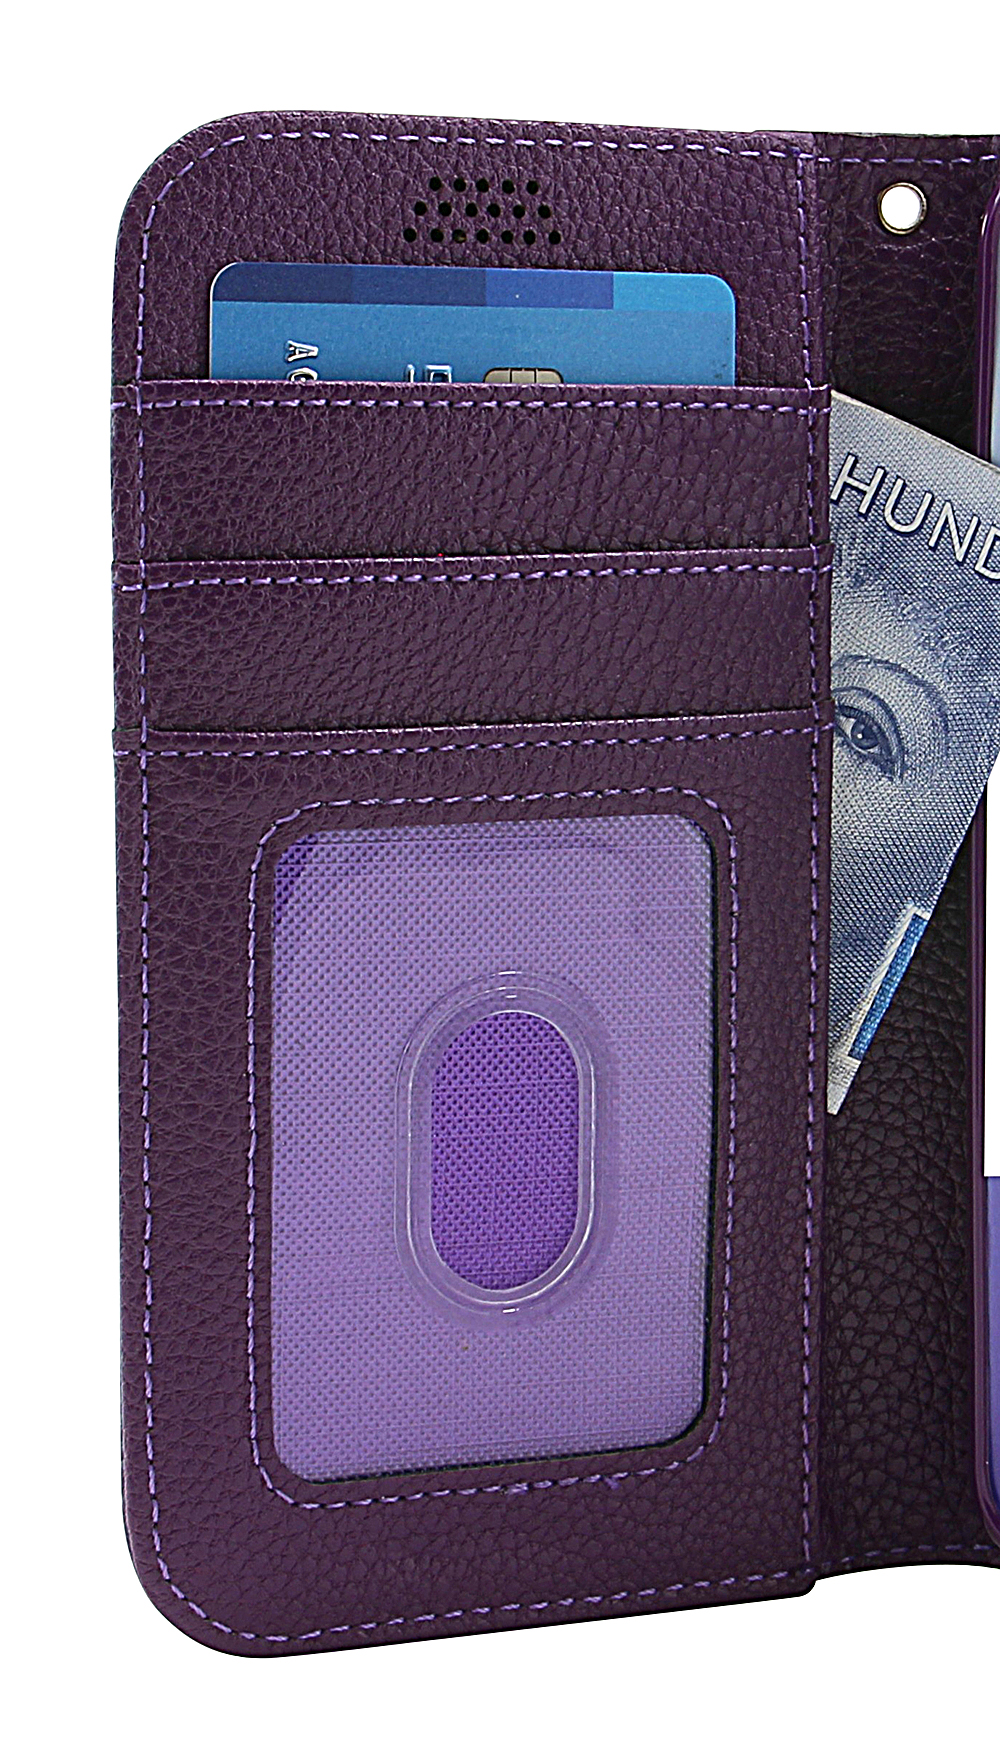 New Standcase Wallet LG V30 (H930)